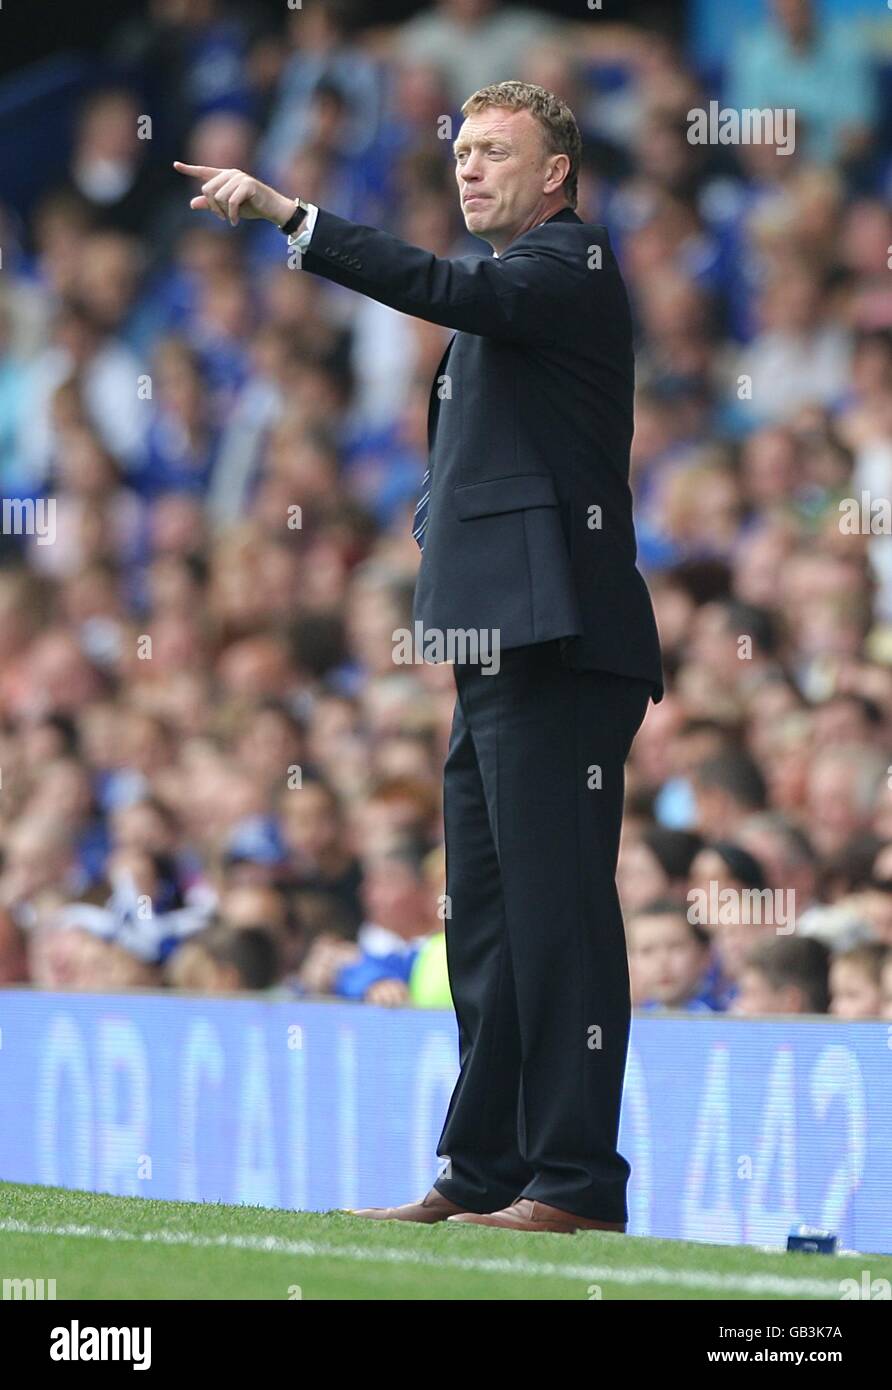 Calcio - Barclays Premier League - Everton / Portsmouth - Goodison Park. David Moyes, il manager di Everton sulla linea di contatto Foto Stock